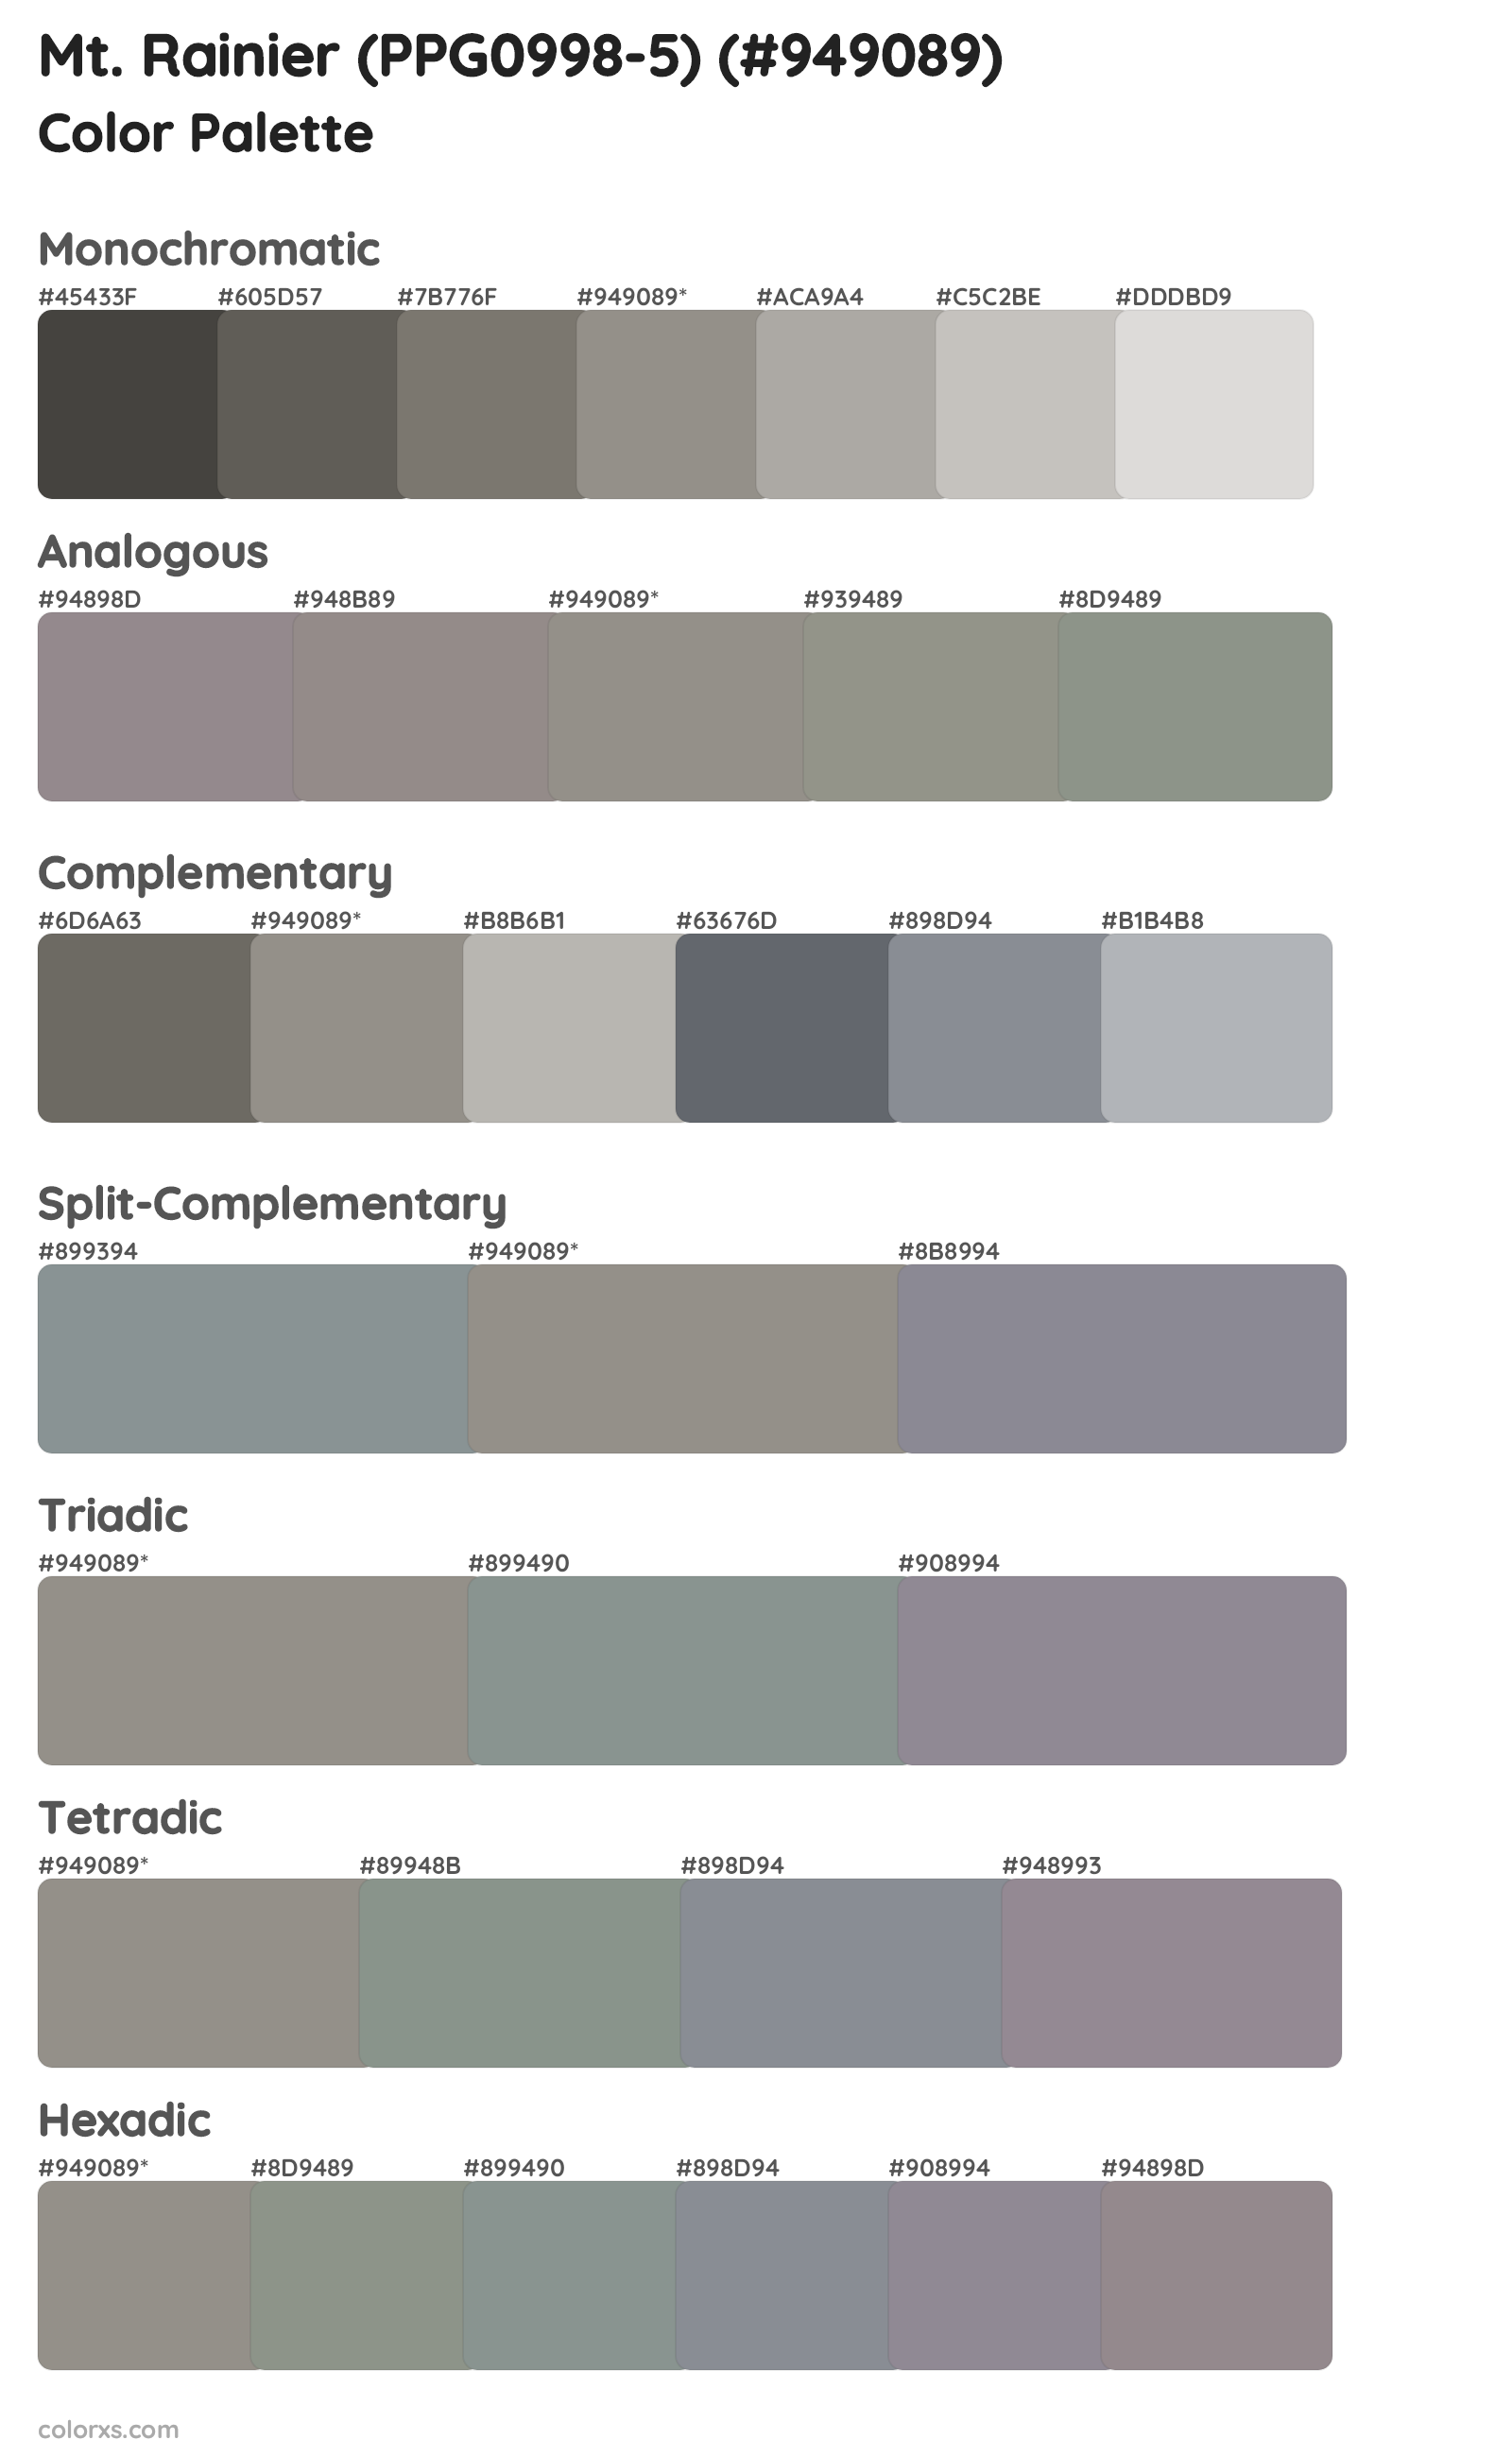 Mt. Rainier (PPG0998-5) Color Scheme Palettes